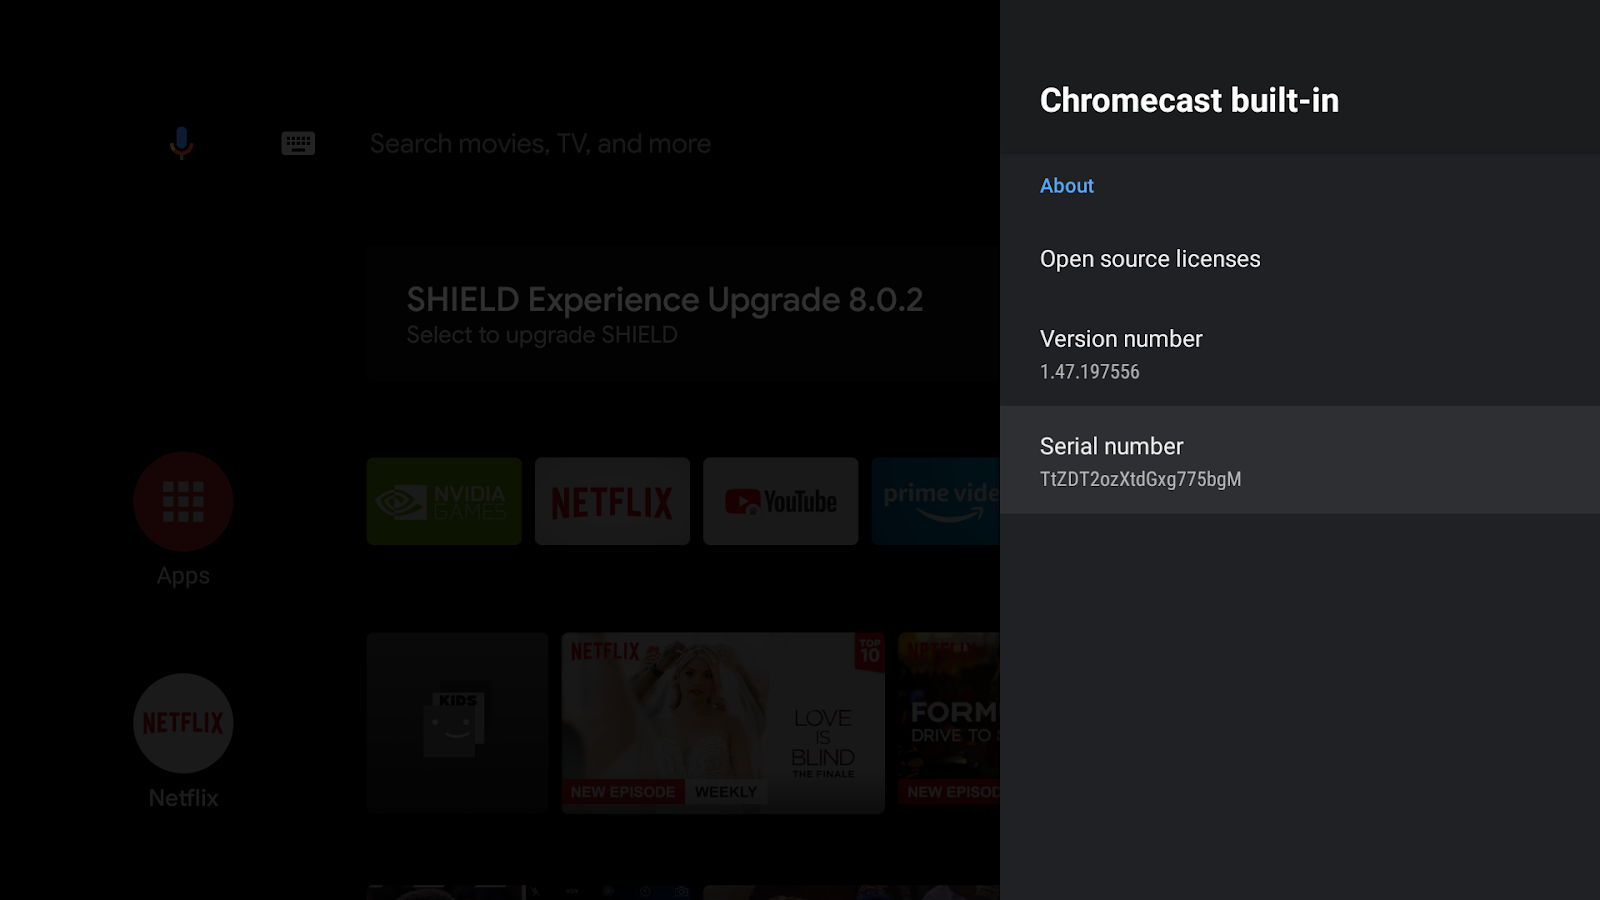 Bild eines Android TV-Bildschirms mit dem Bildschirm mit integrierter Chromecast-Technologie, der Versionsnummer und der Seriennummer